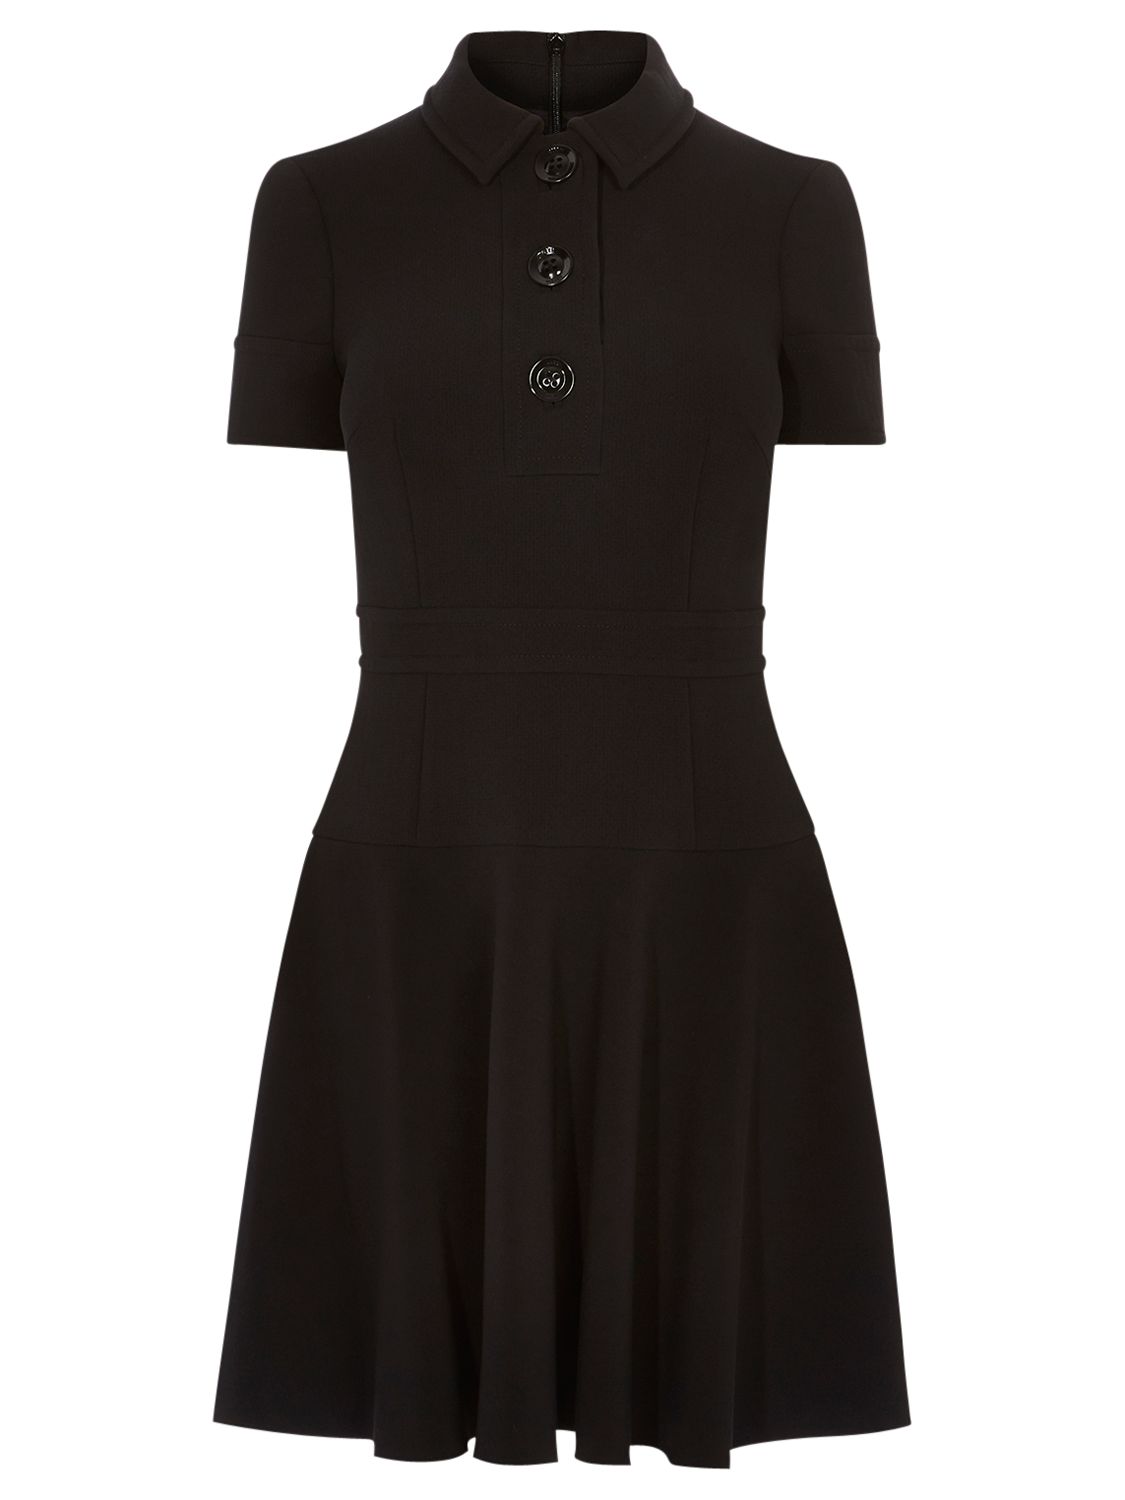 Karen Millen Button Detail Dress, Black